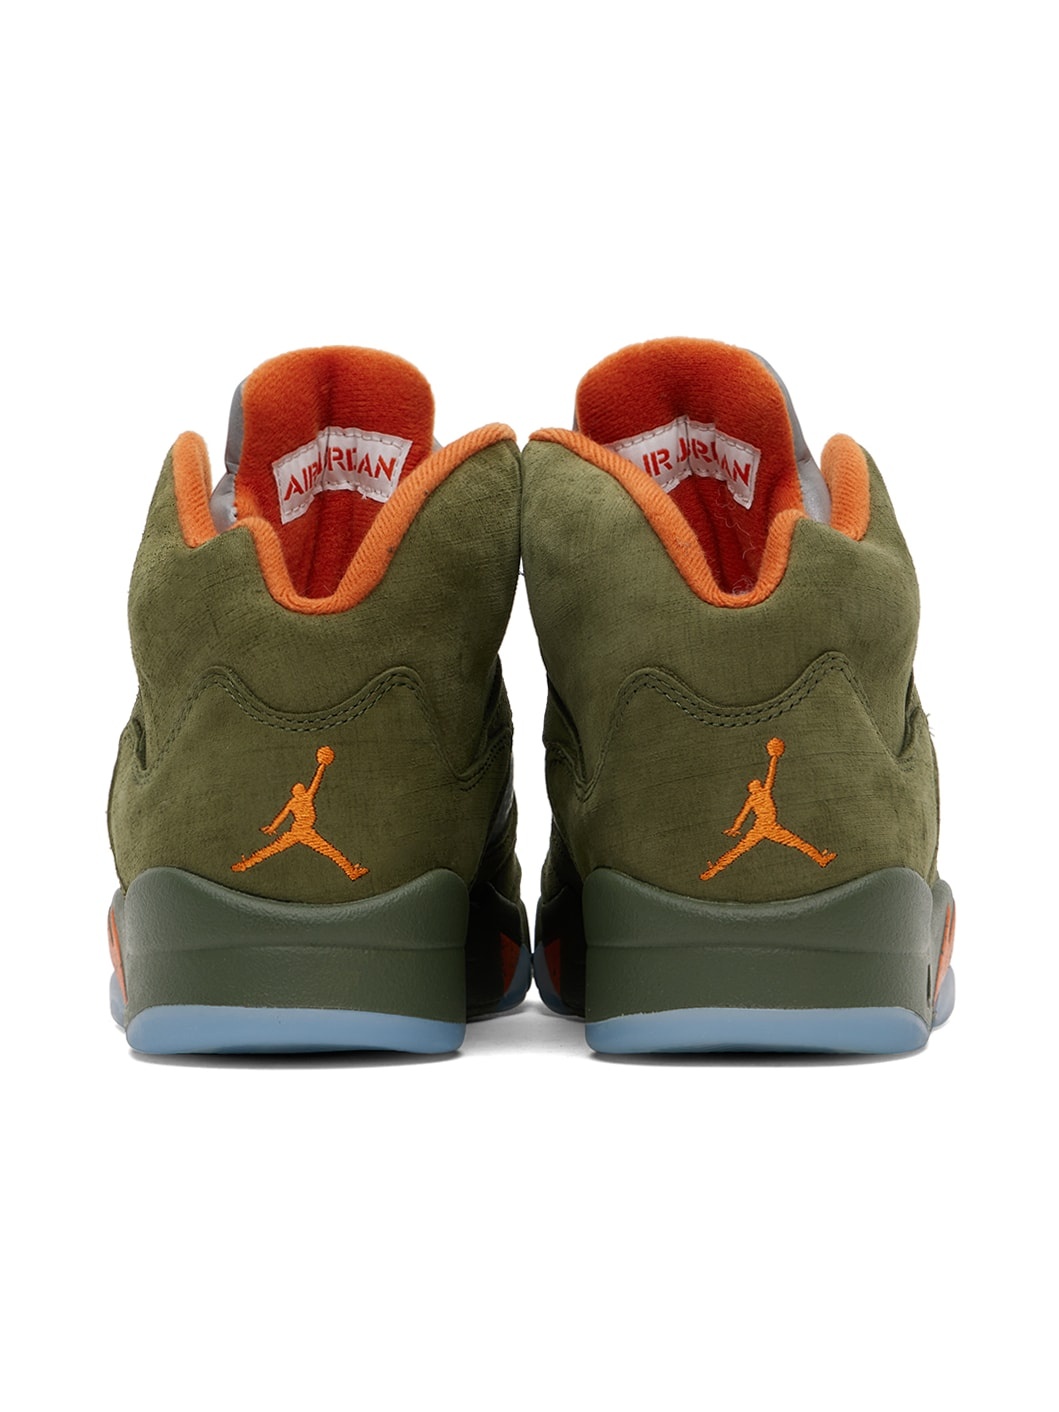 Green Air Jordan 5 Sneakers - 2